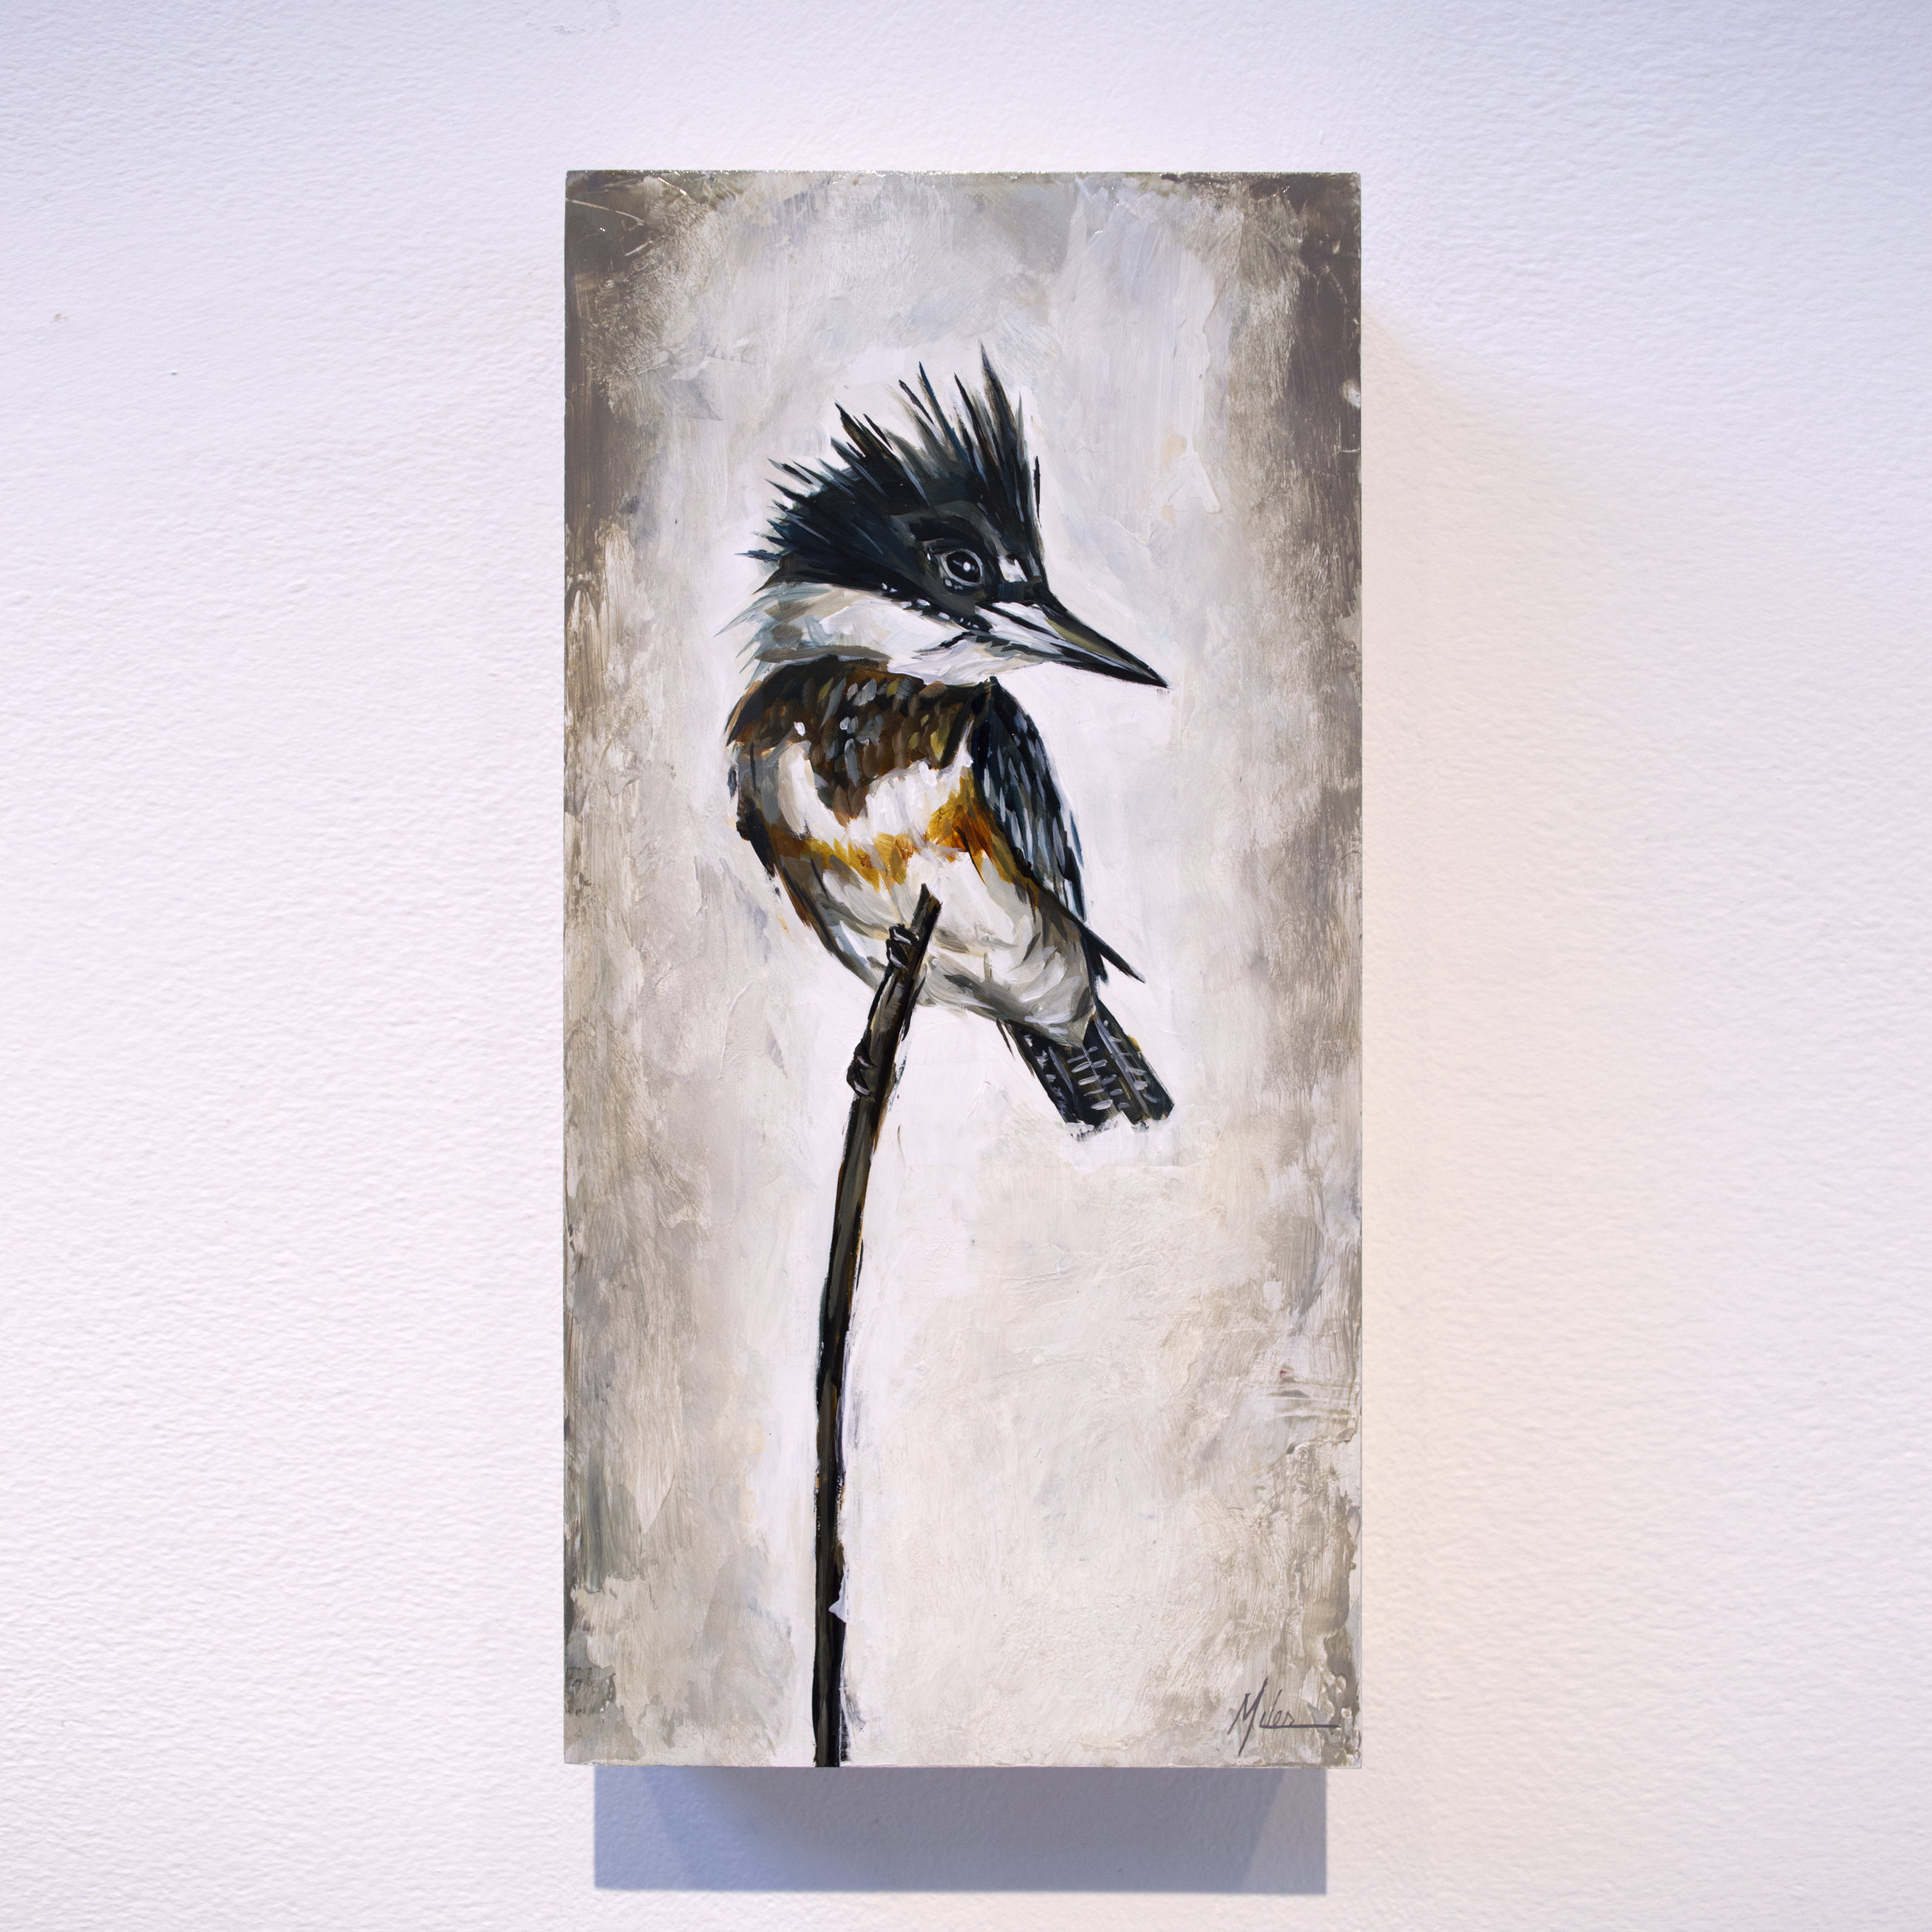   Kingfisher   acrylic on panel  6” x 12” 